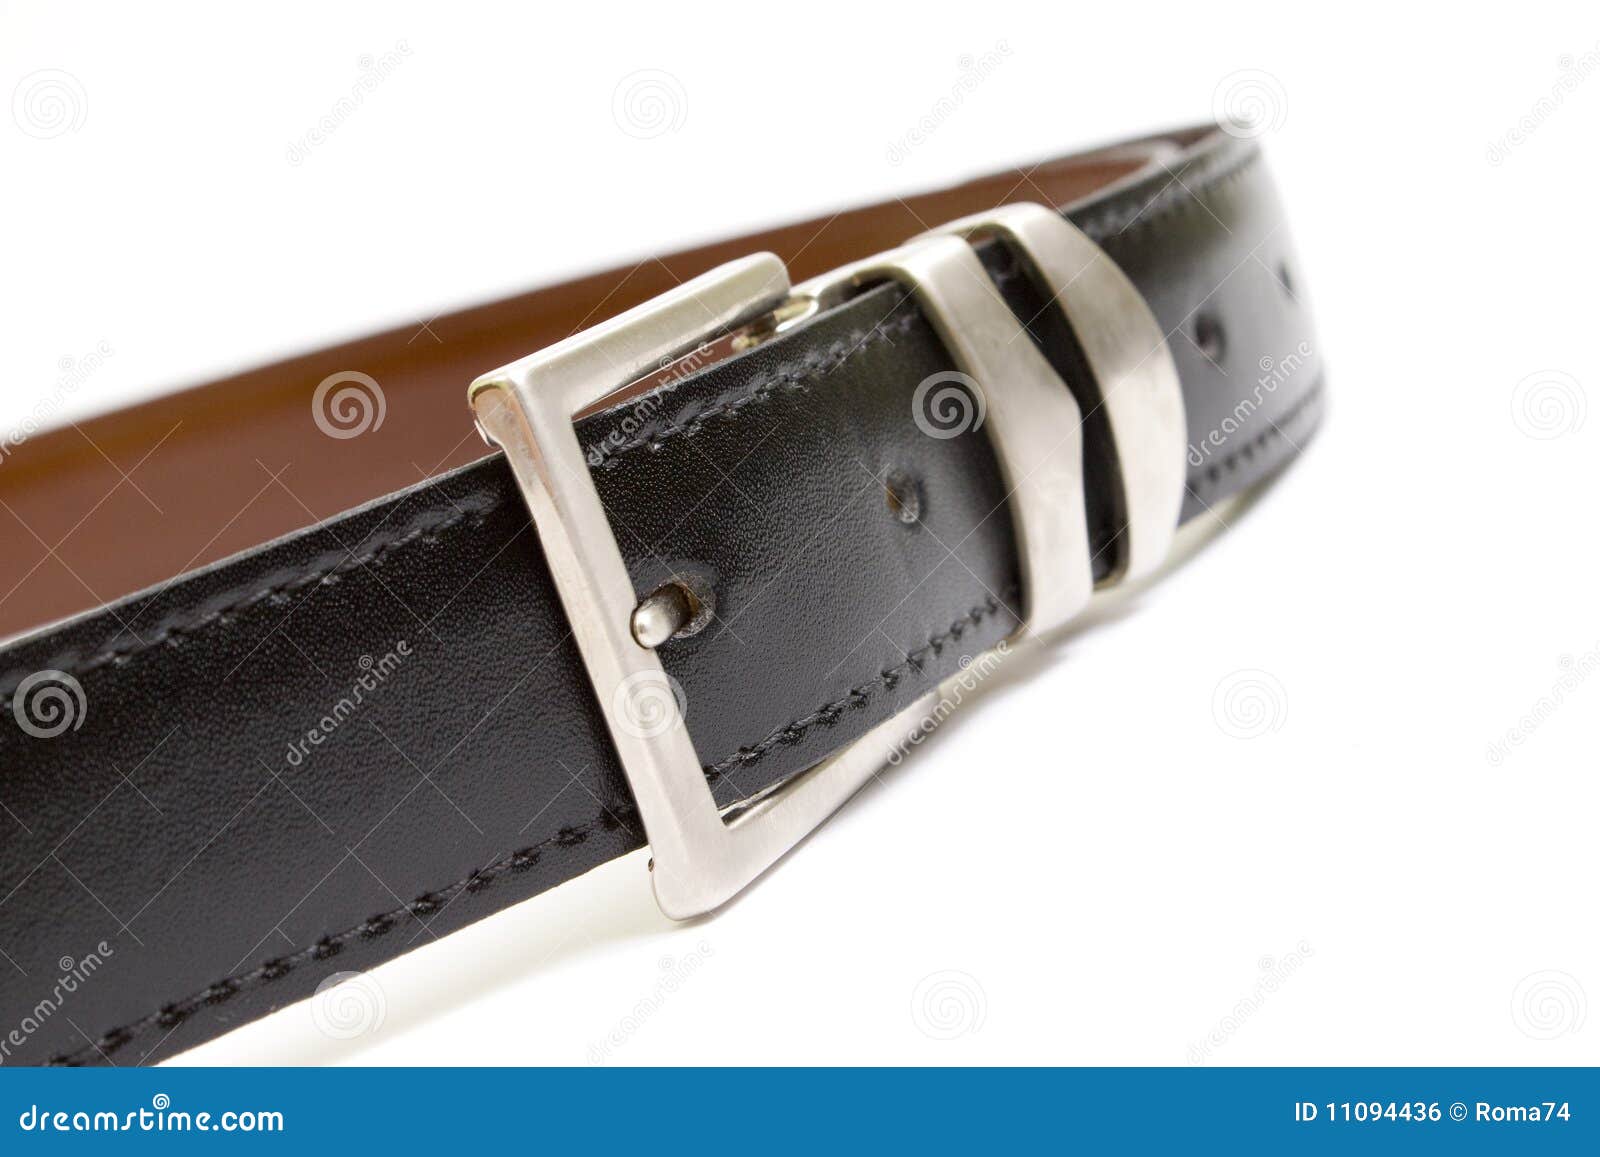 Touser belt stock photo. Image of luxury, belt, modern - 11094436